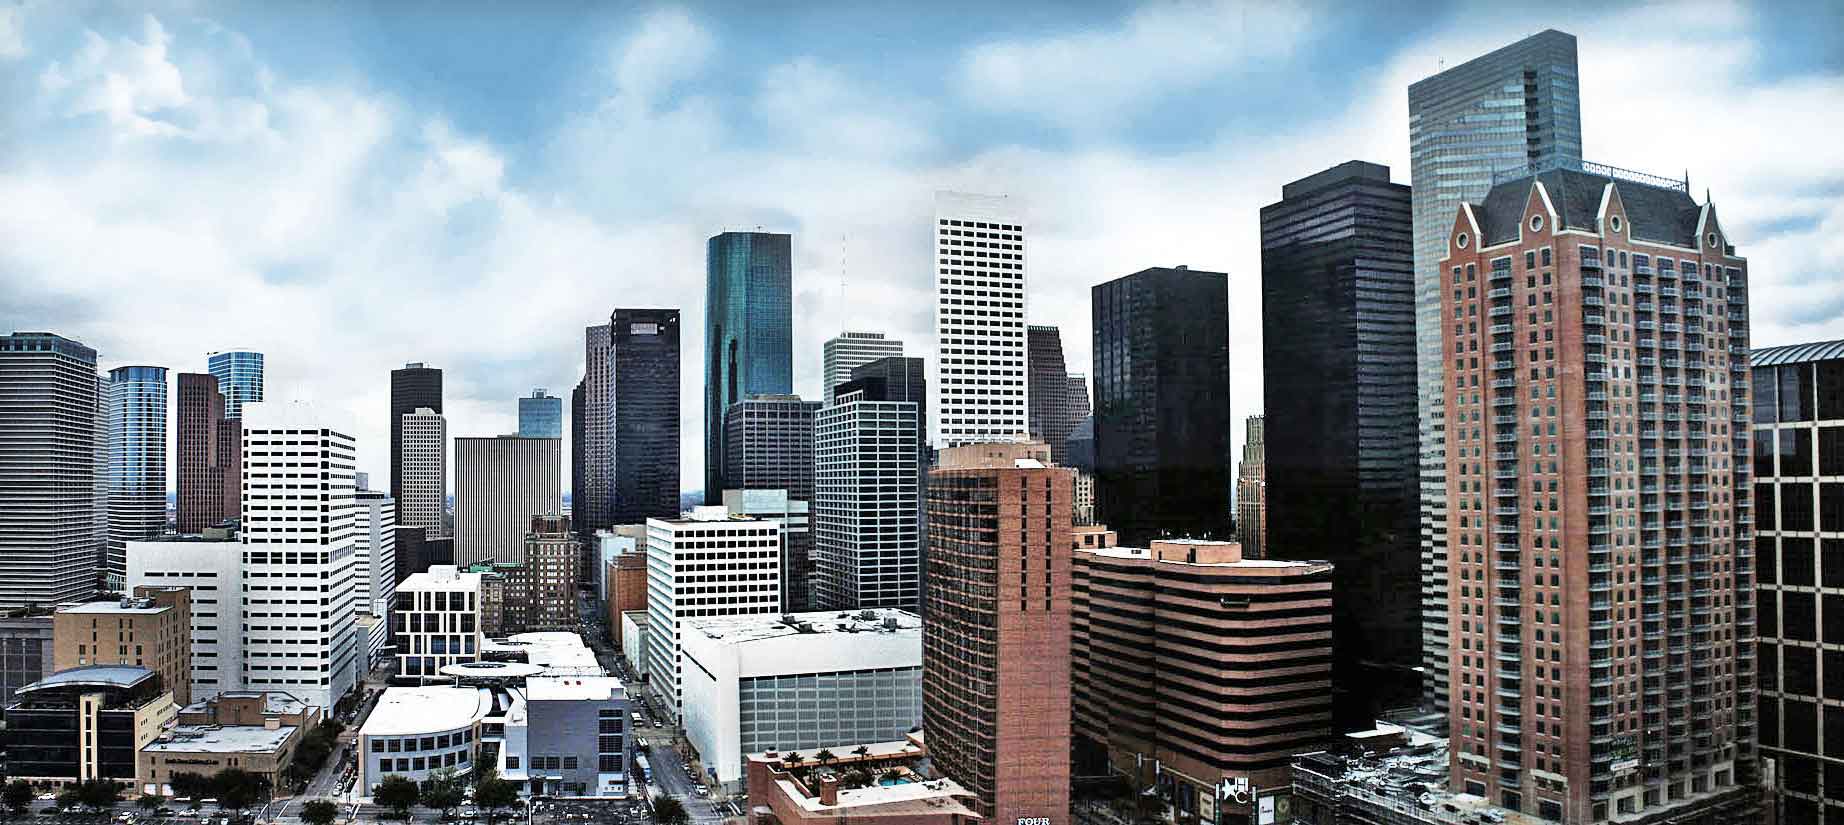 Houston Downtown Image